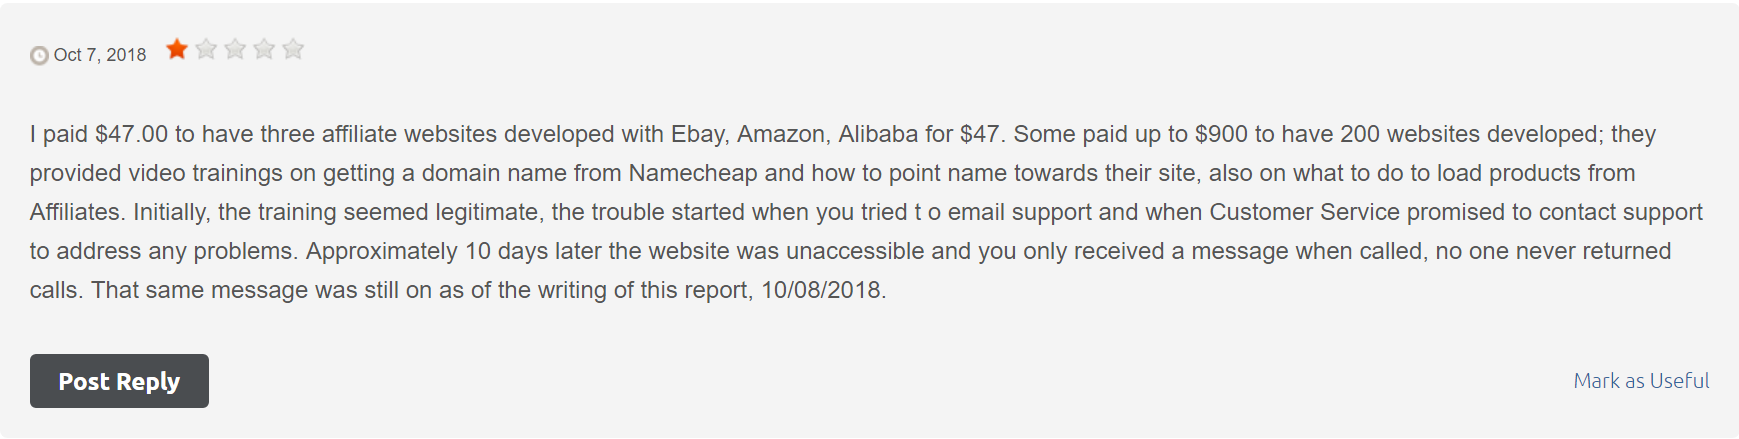 retailpay.org scam-no websites after 10 days